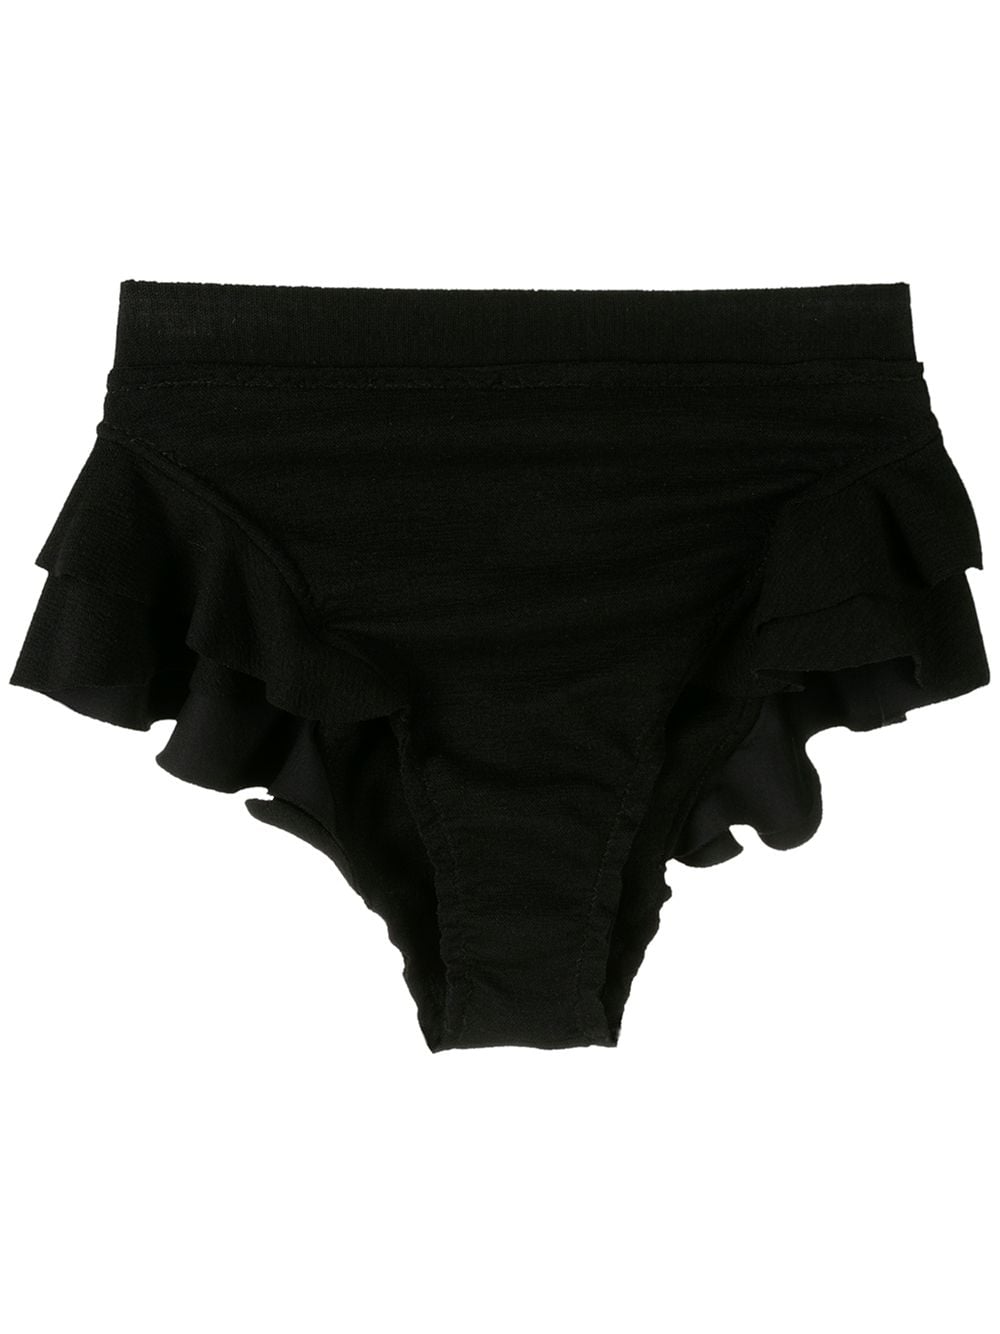 Clube Bossa Turbe bikini bottoms - Black von Clube Bossa